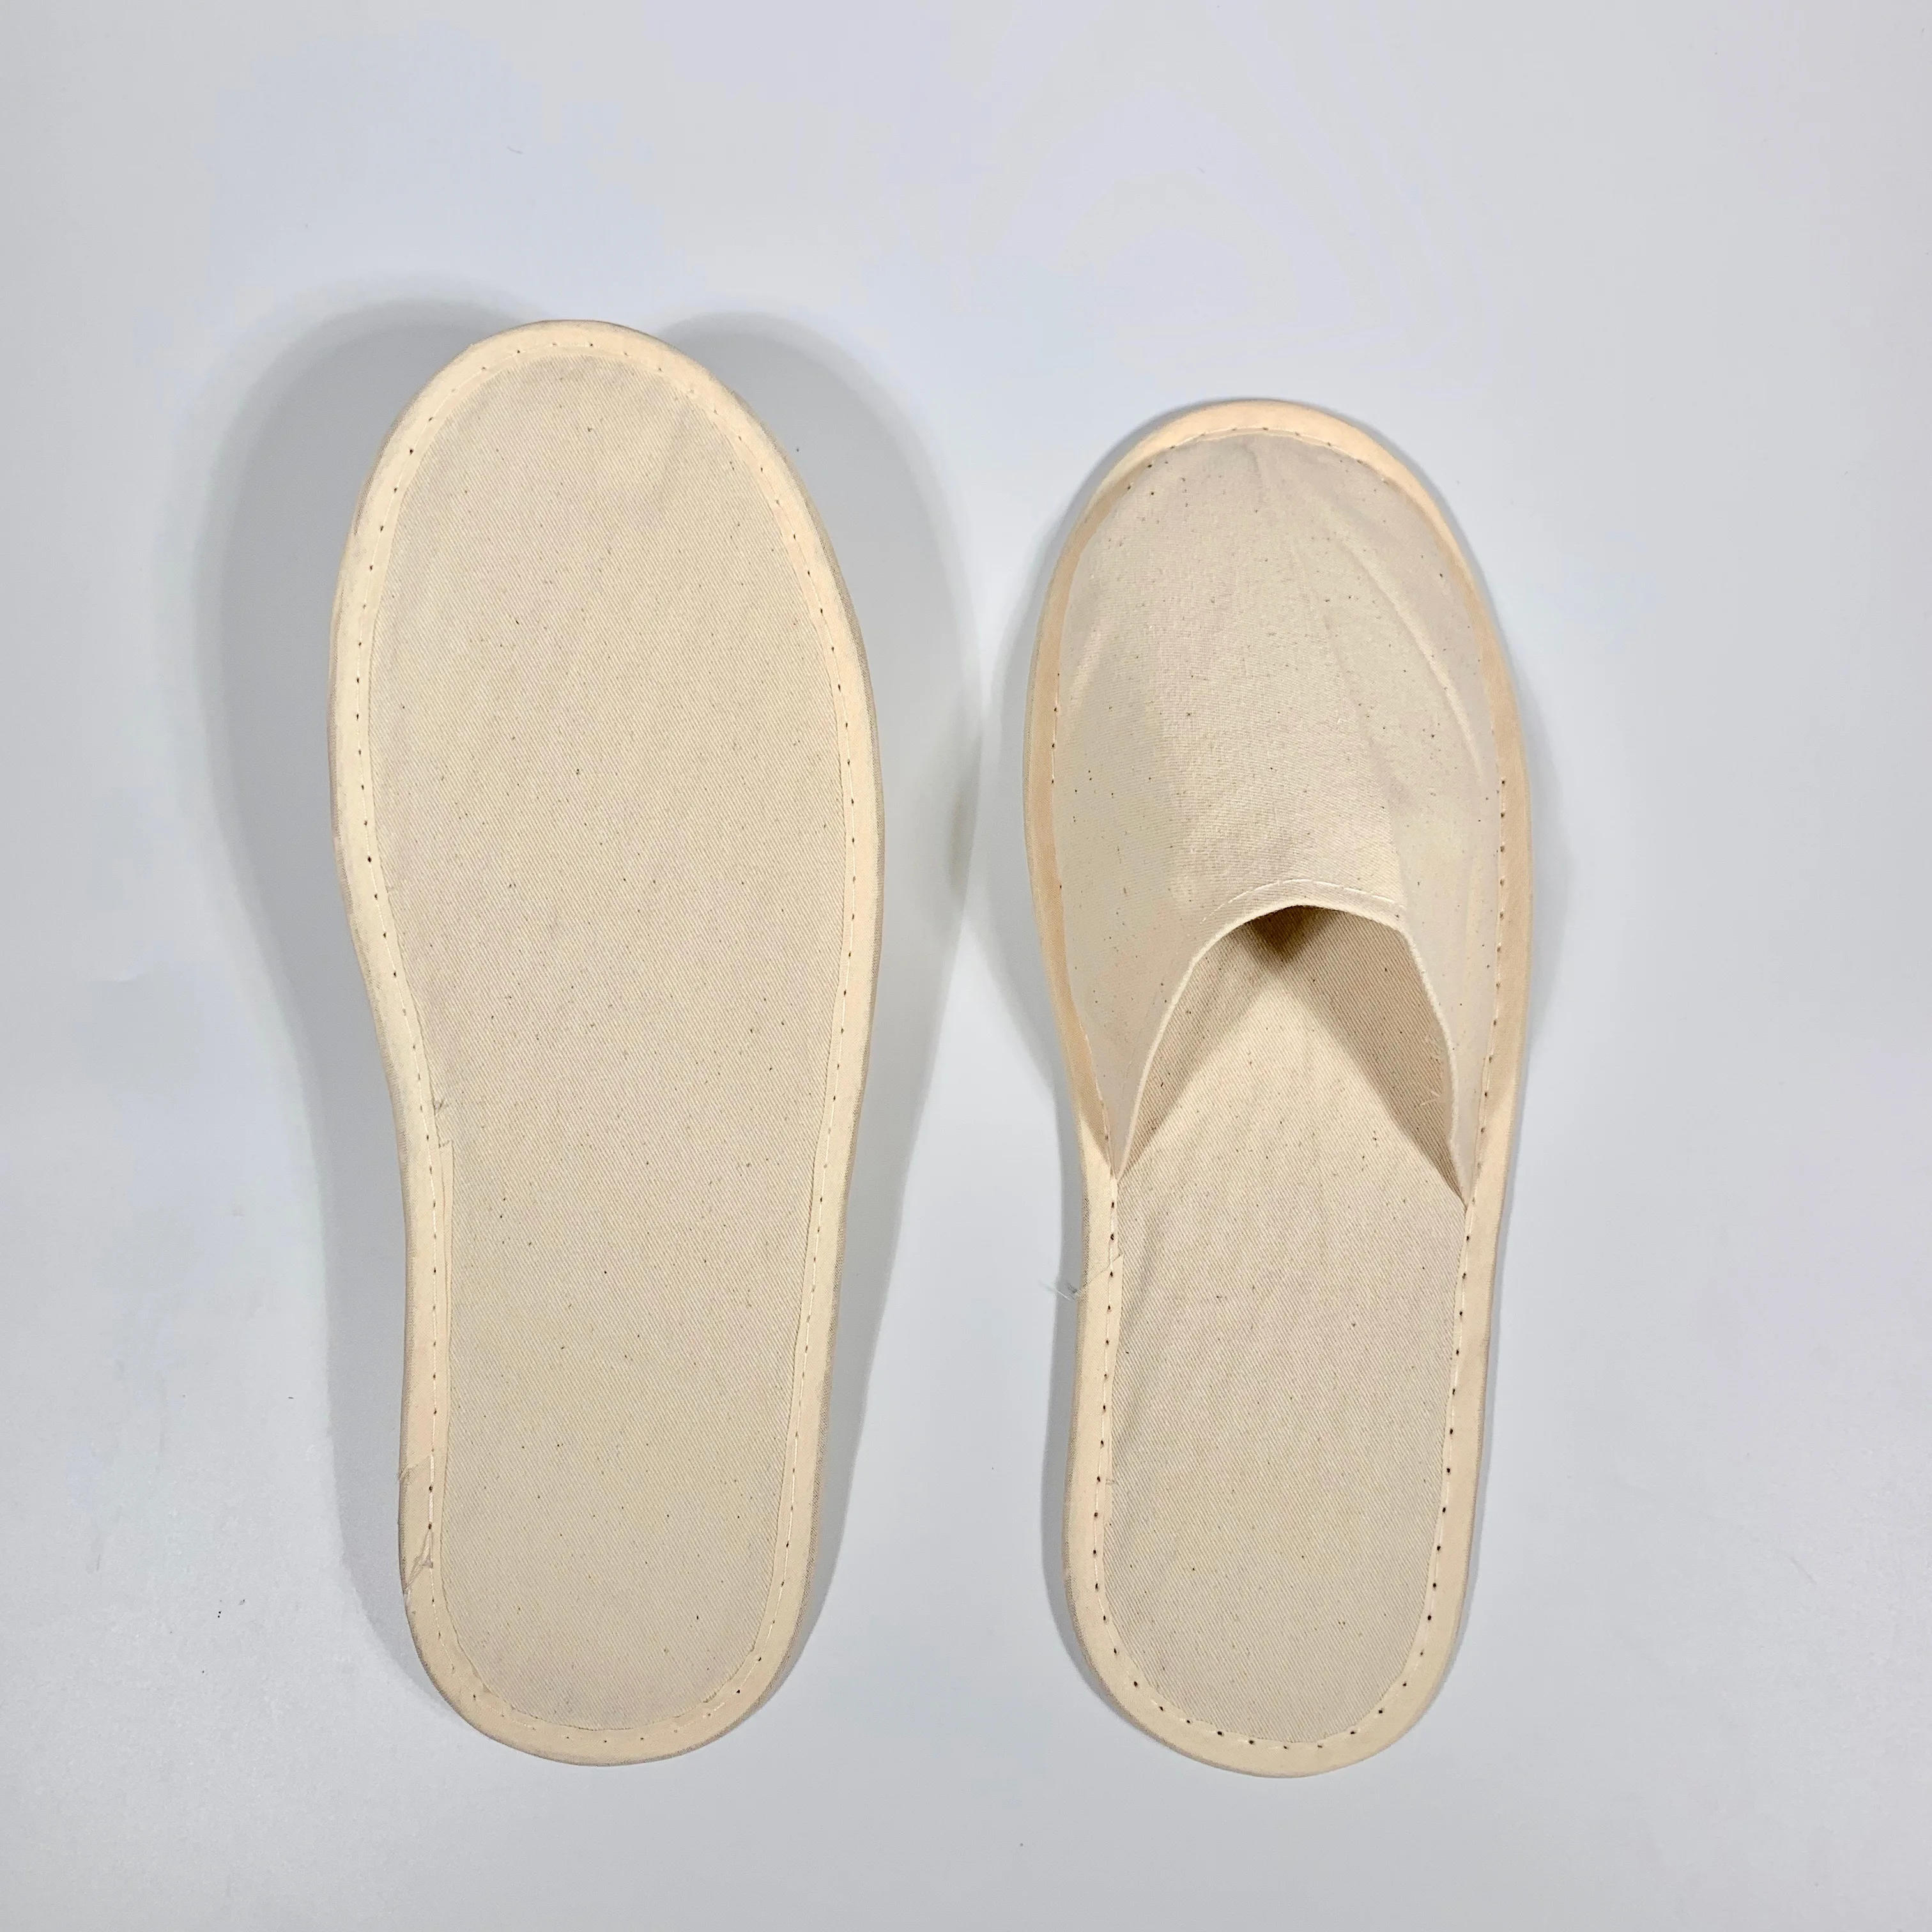 Ткань для подошвы. Lacoste Croco Sandal. Тапочки жен колокольчик банные штучки войлок. Банные штучки тапочки для бани. Тапочки для сауны классические женские OBSI бв026ж.